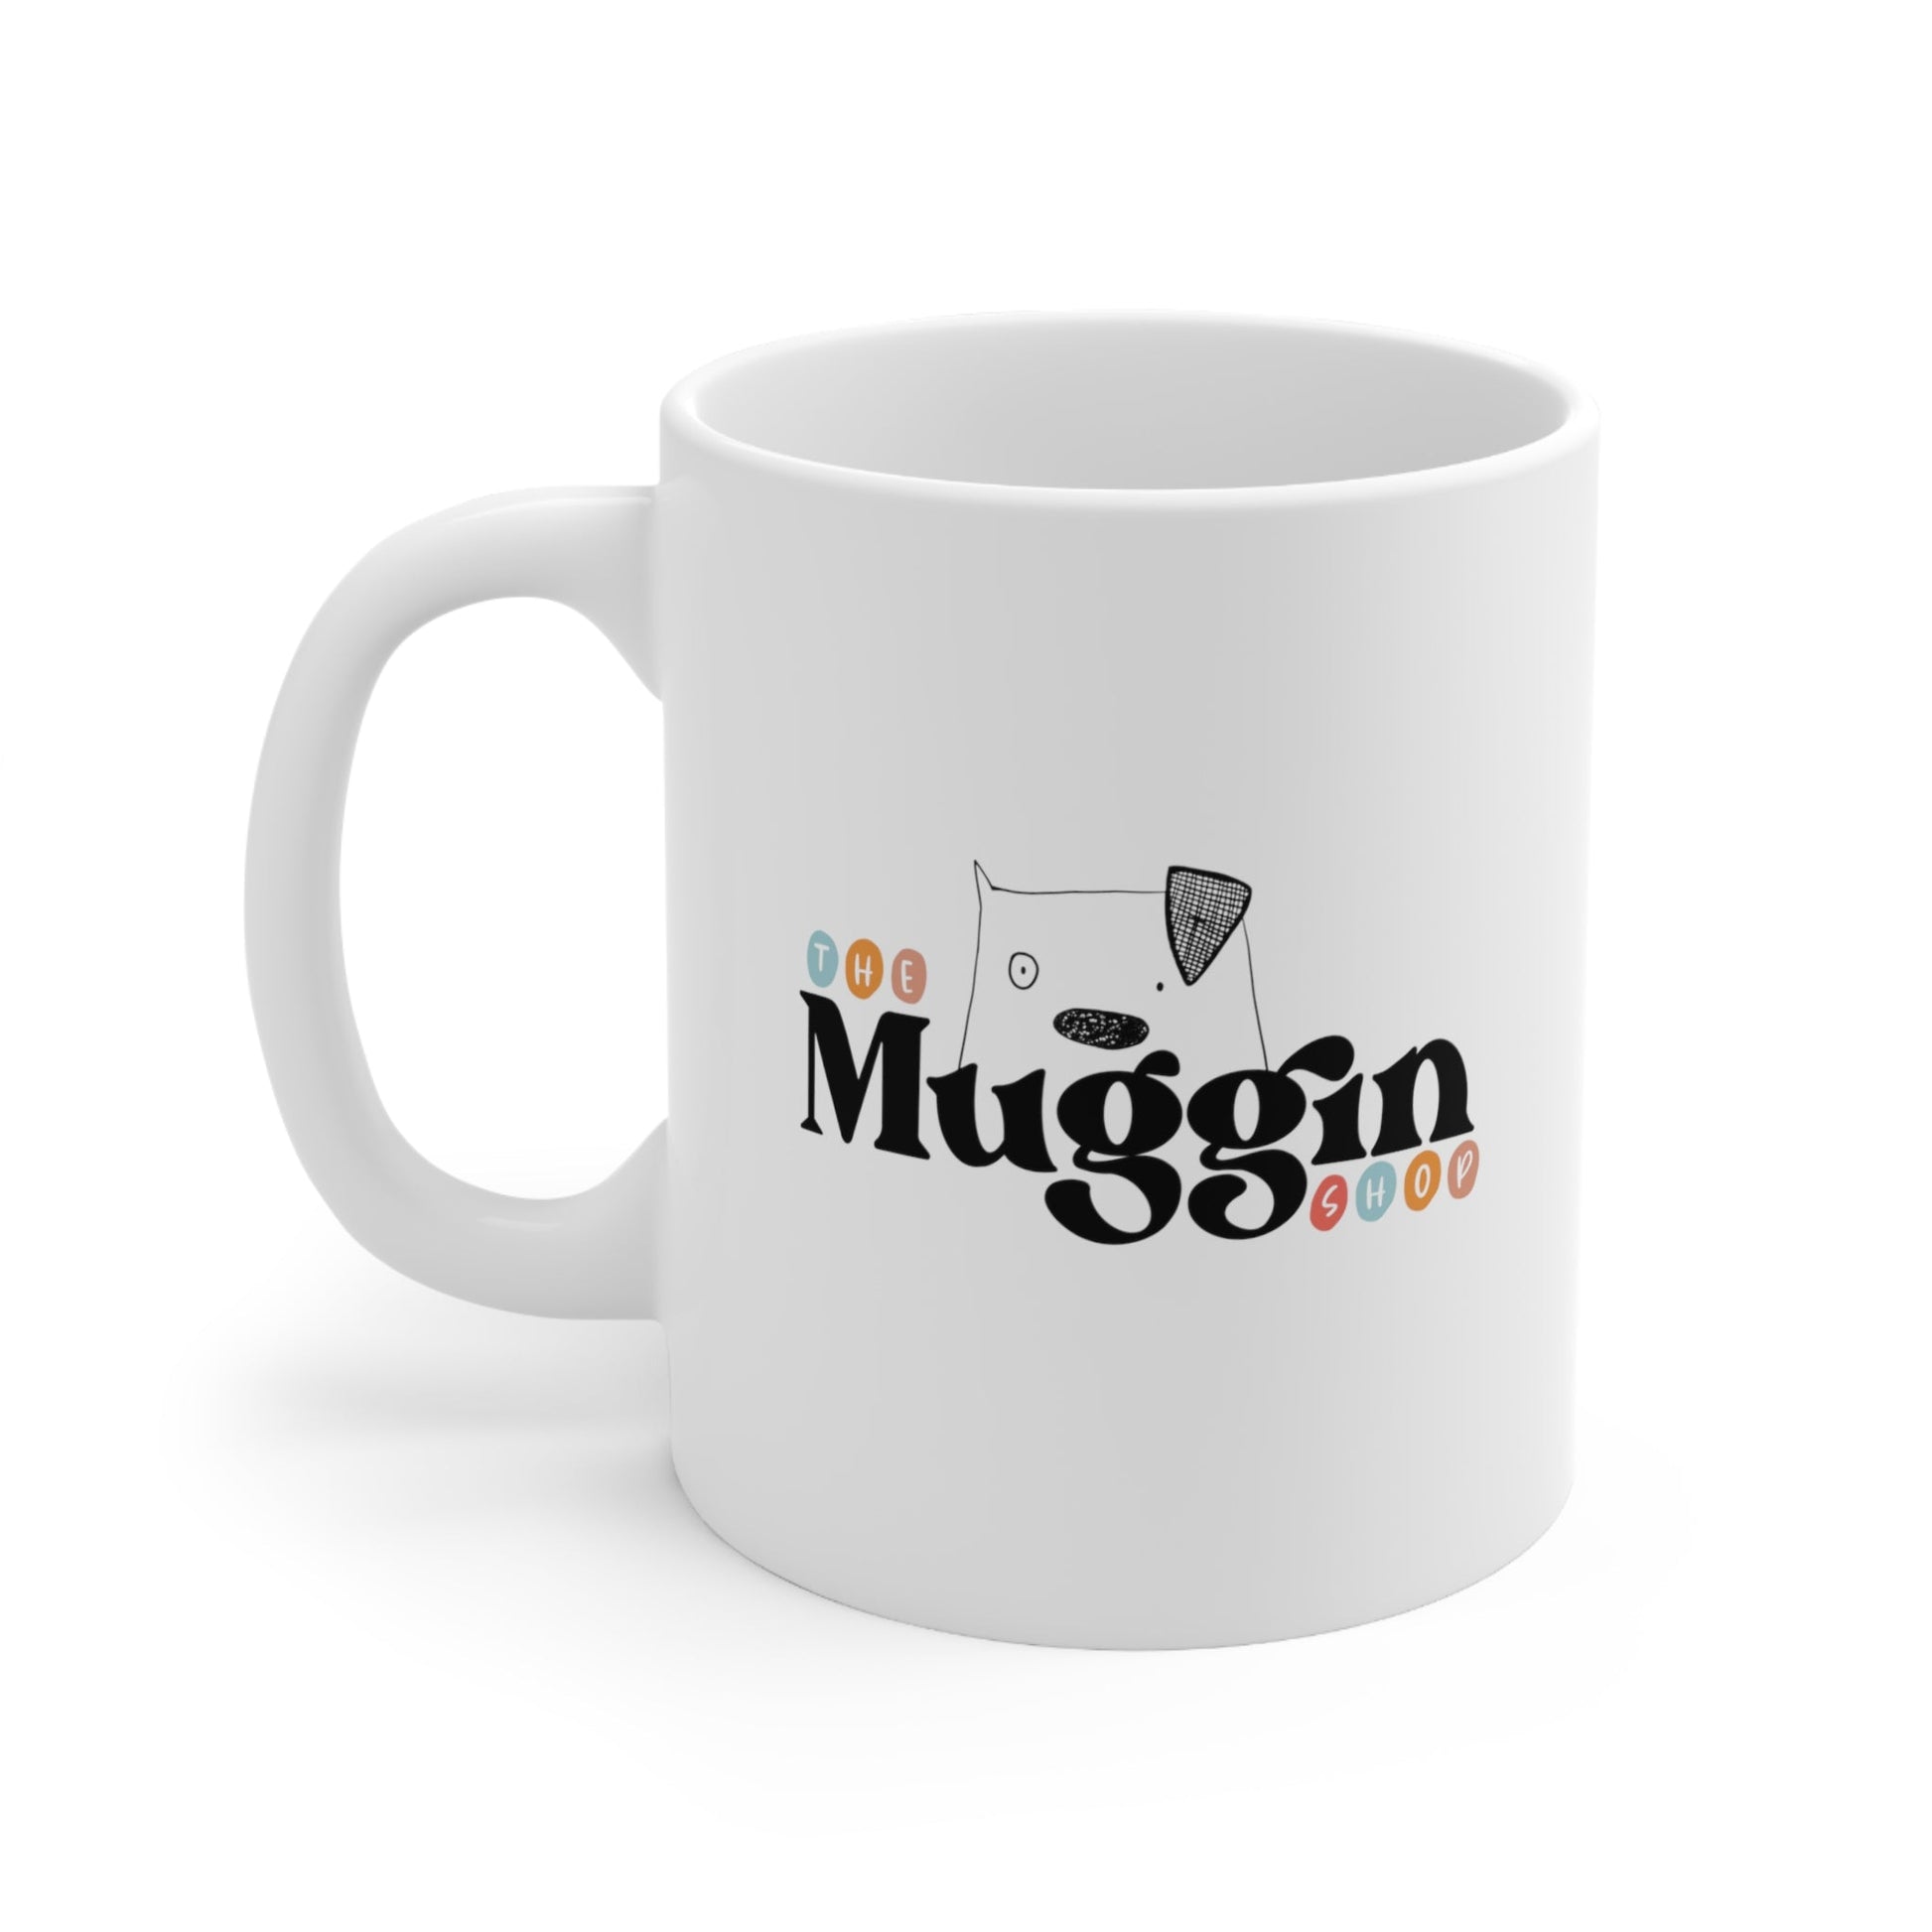 The Muggin Shop logo mug - The muggin shop